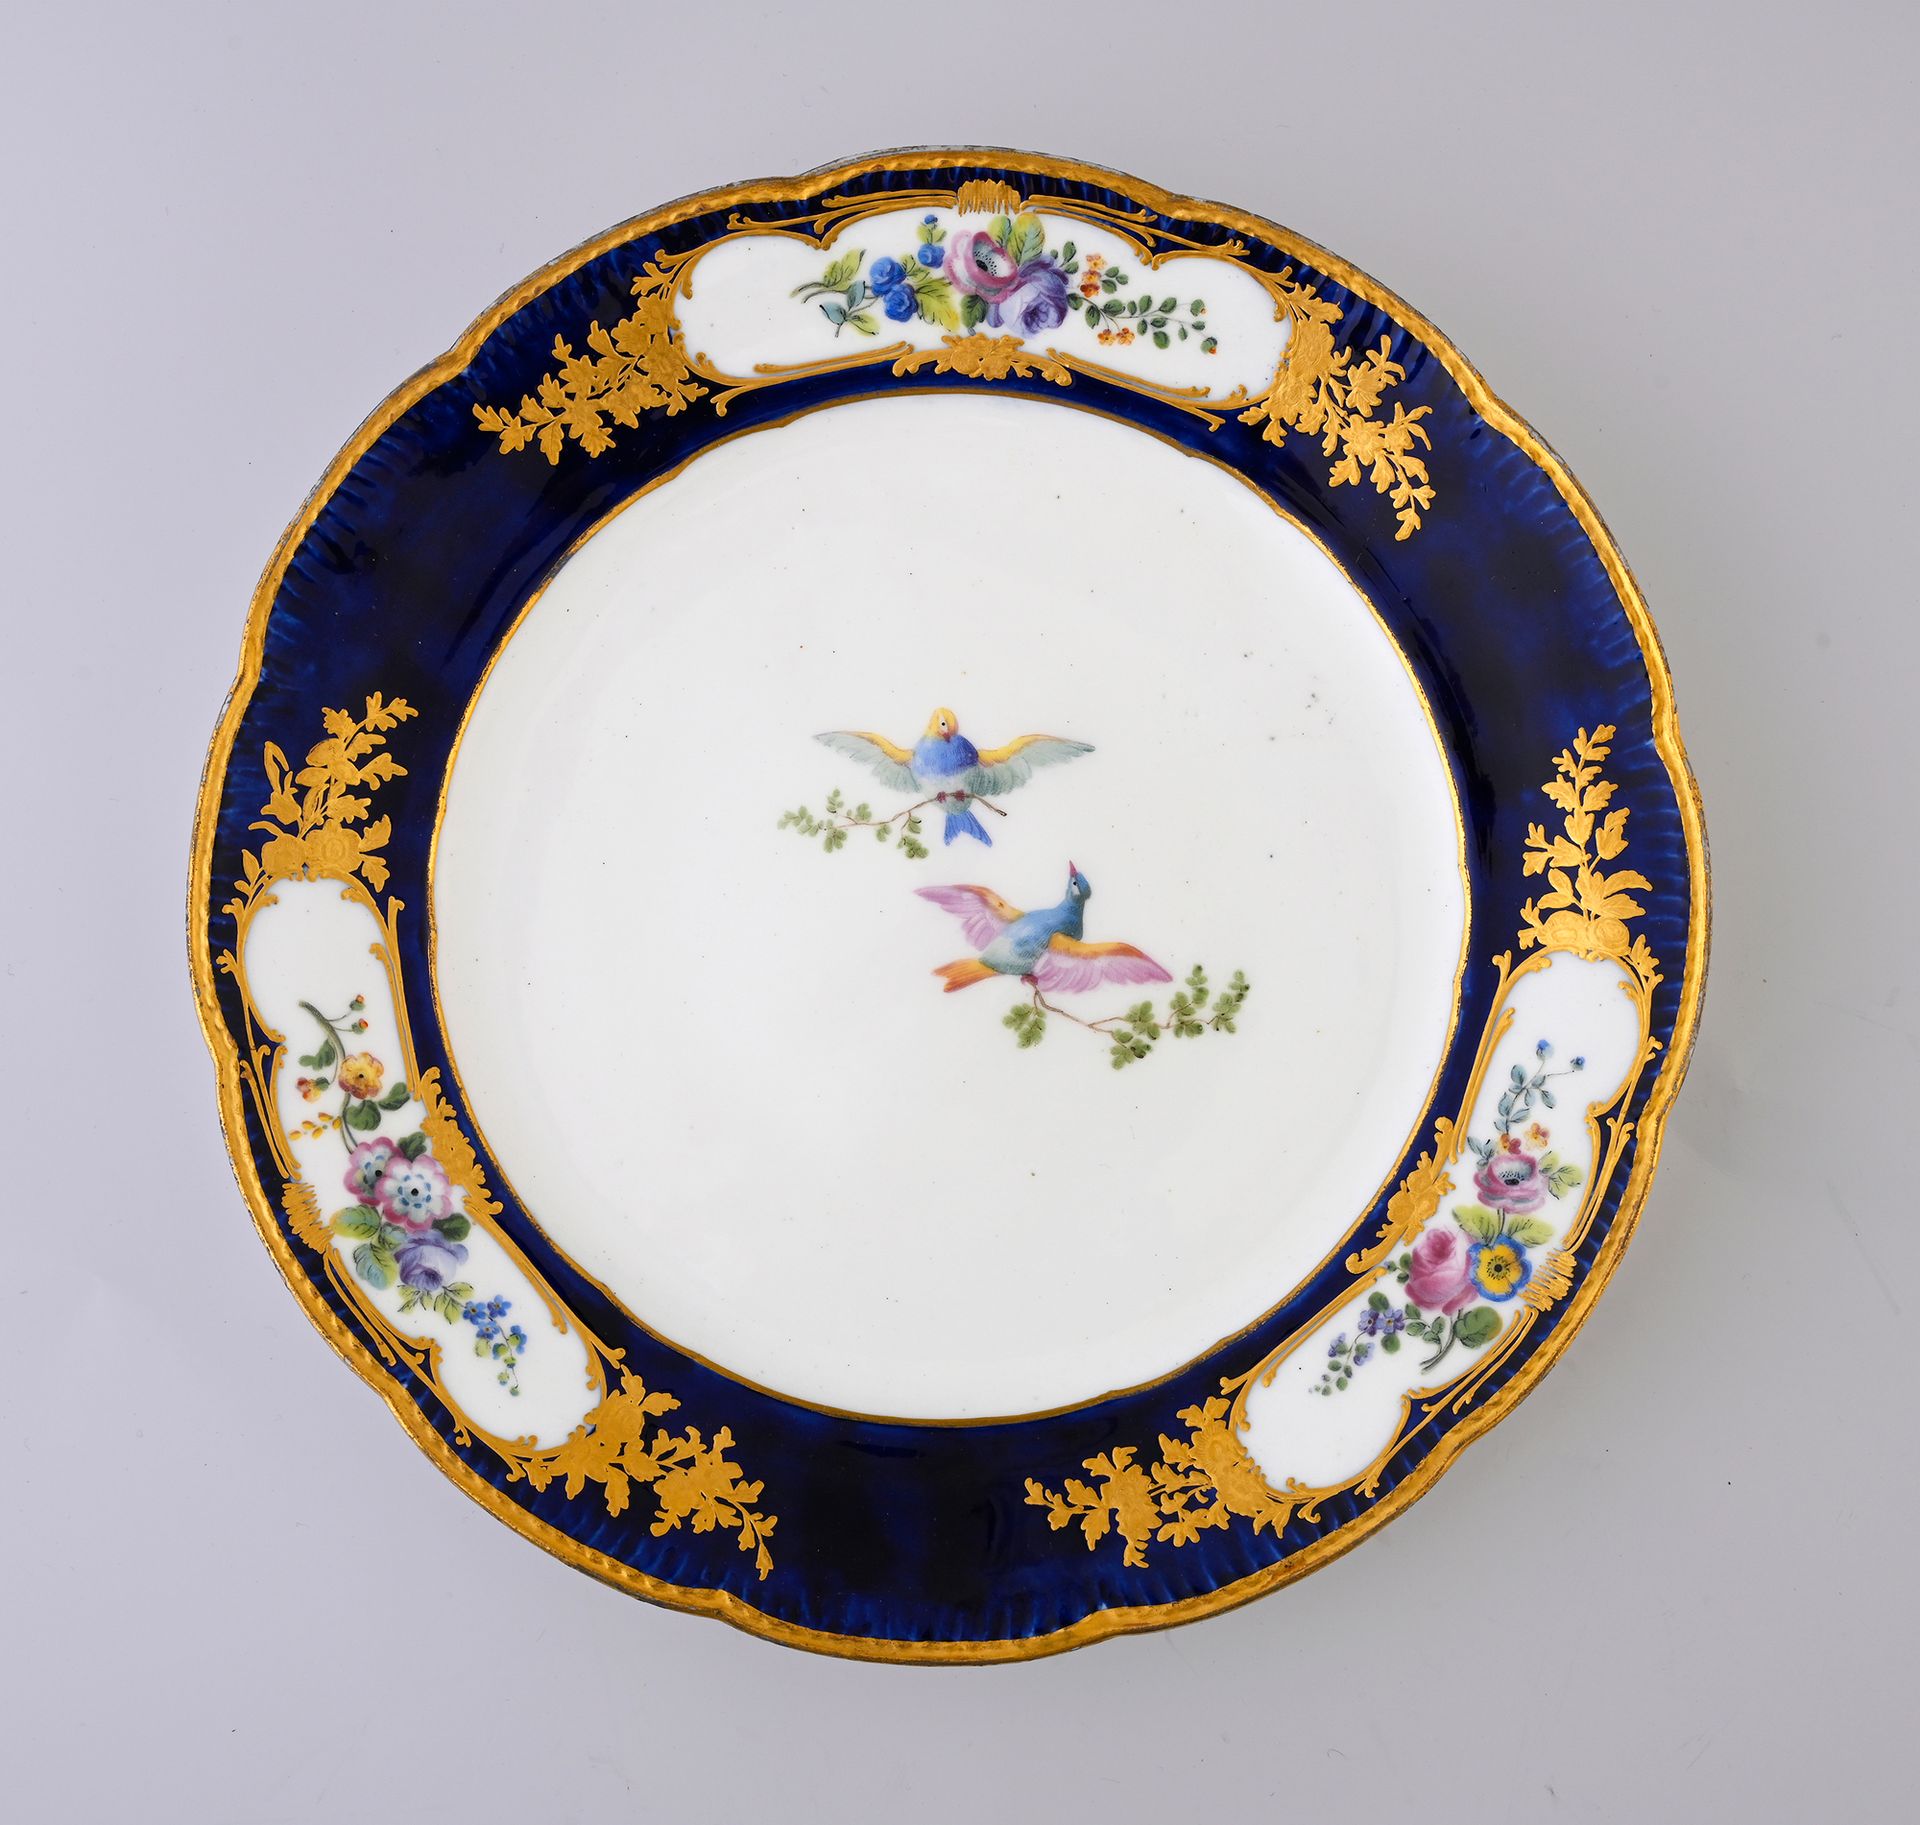 Null Plato de porcelana de Sèvres del siglo XVIII con adornos
Marca en azul con &hellip;